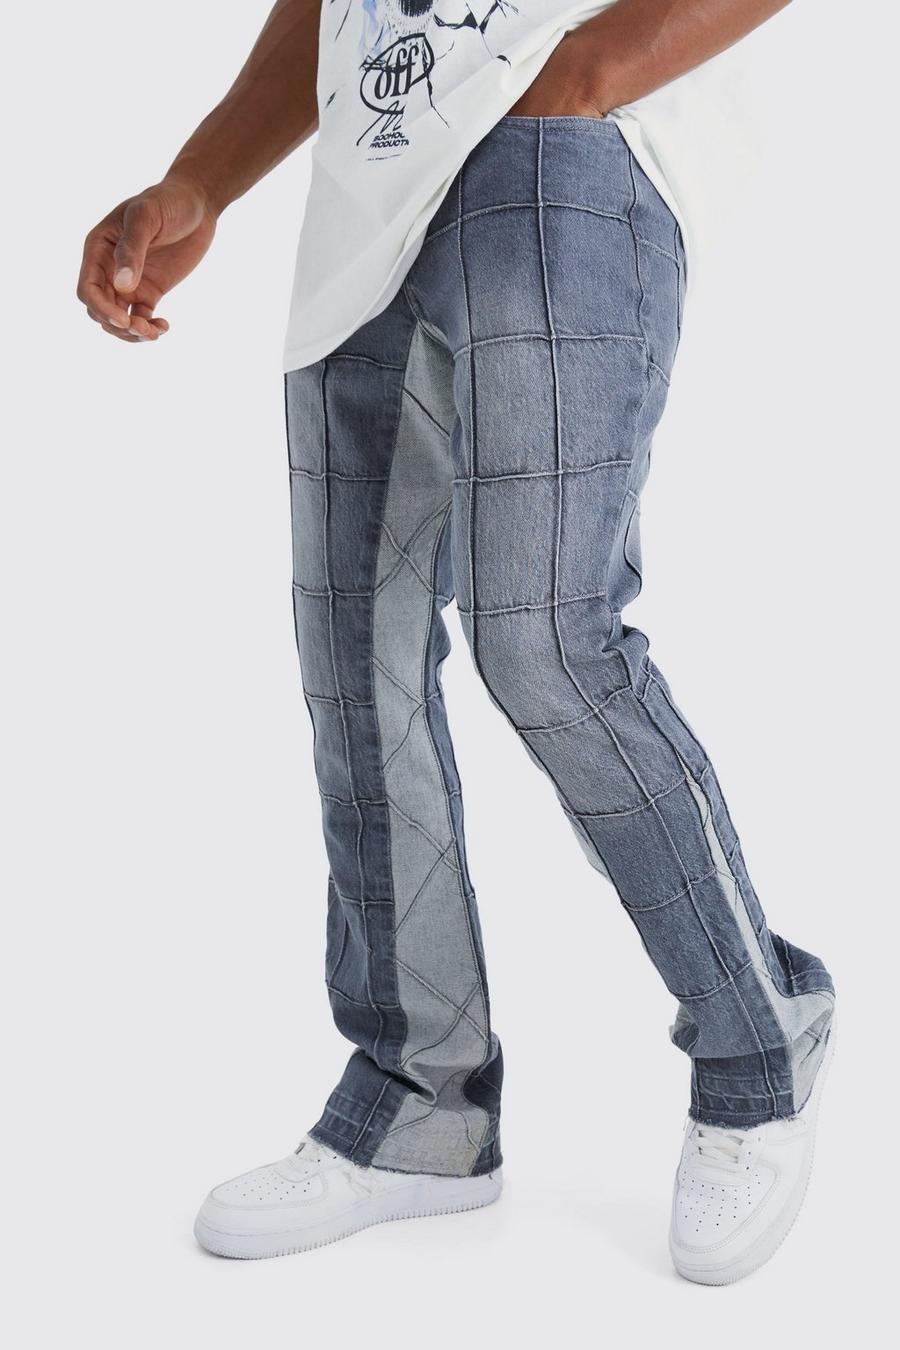 Jeans Slim Fit in denim rigido con pannelli a zampa e inserti, Mid grey grigio